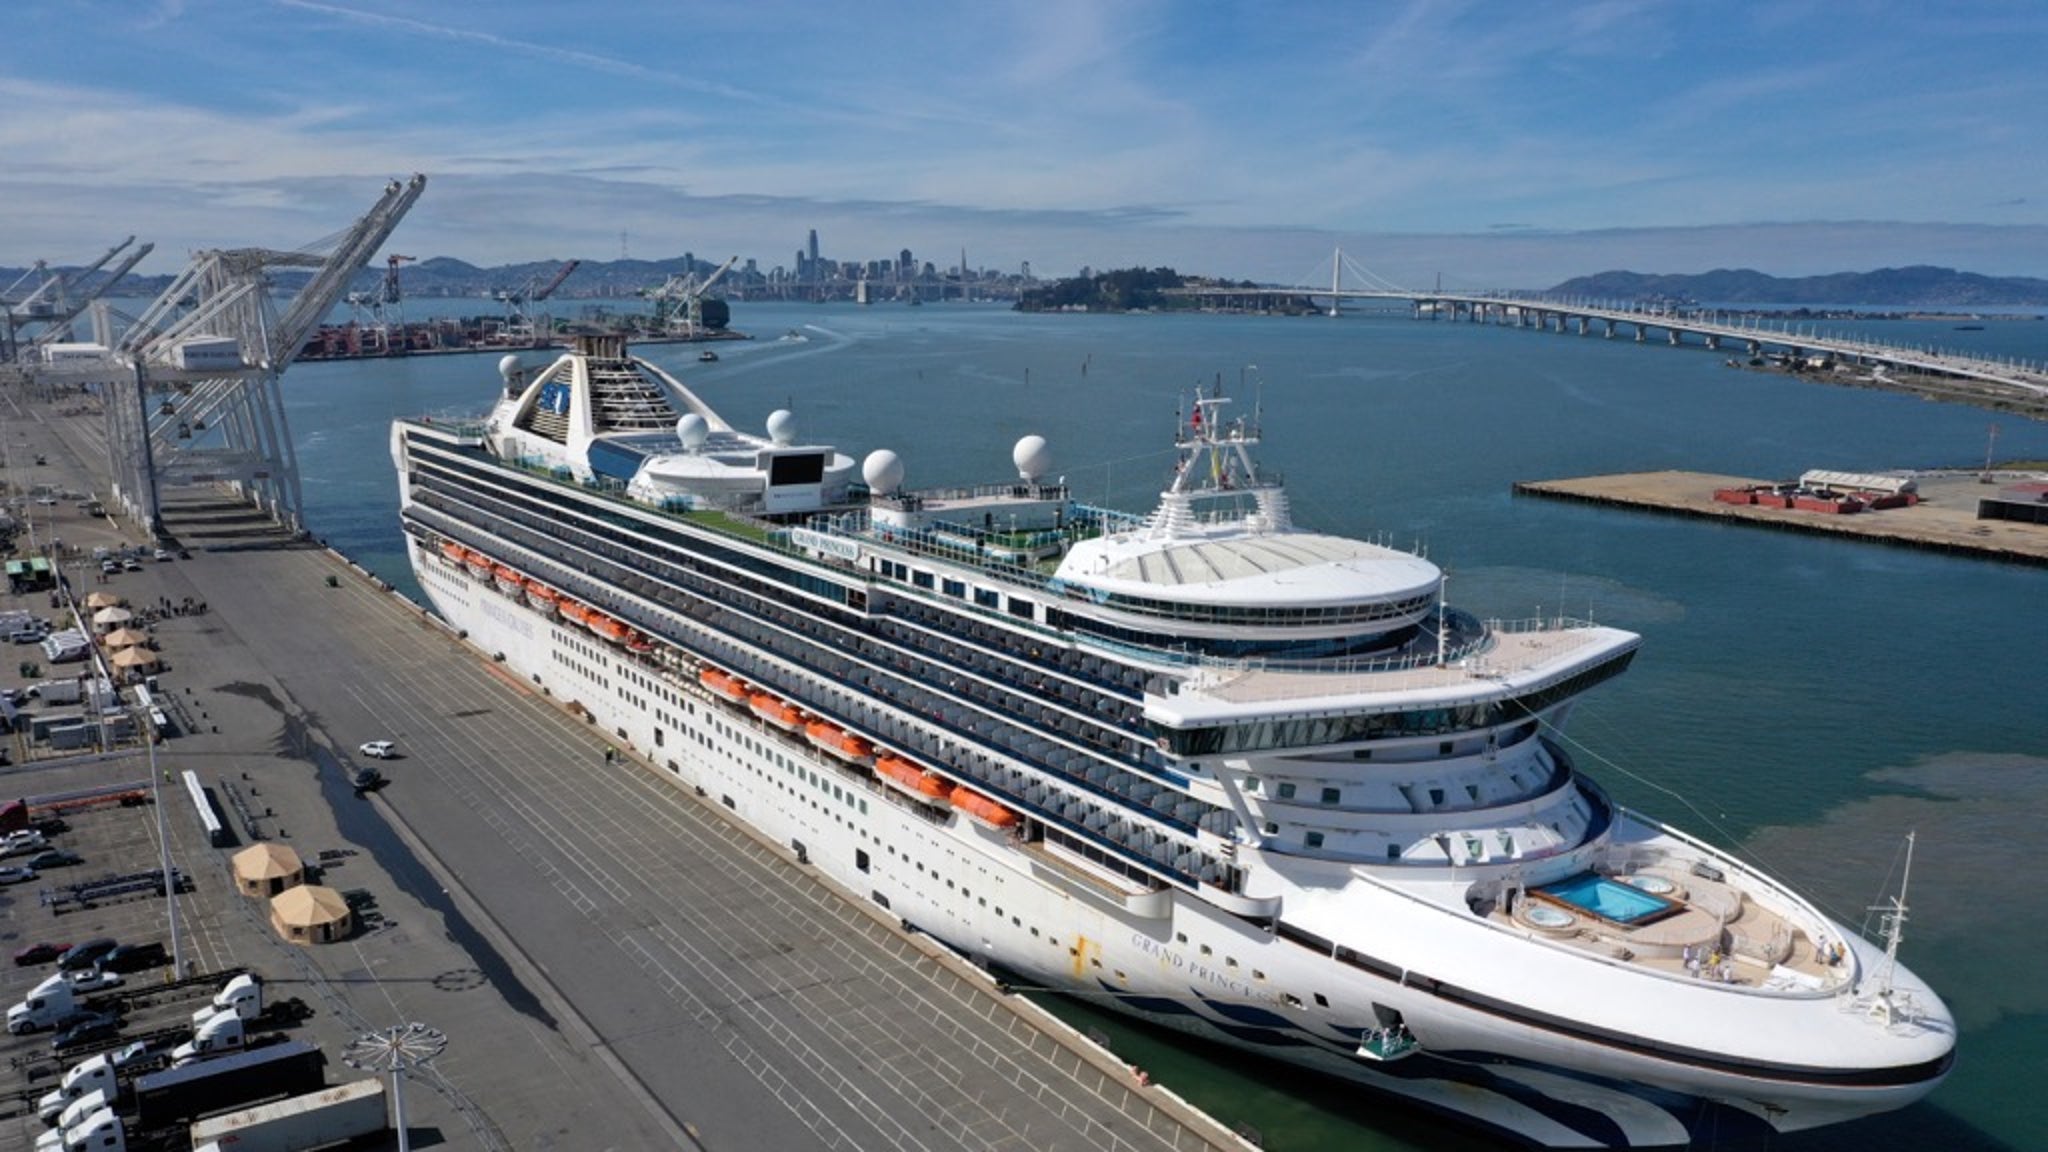 Princess Cruise Ship in San Francisco